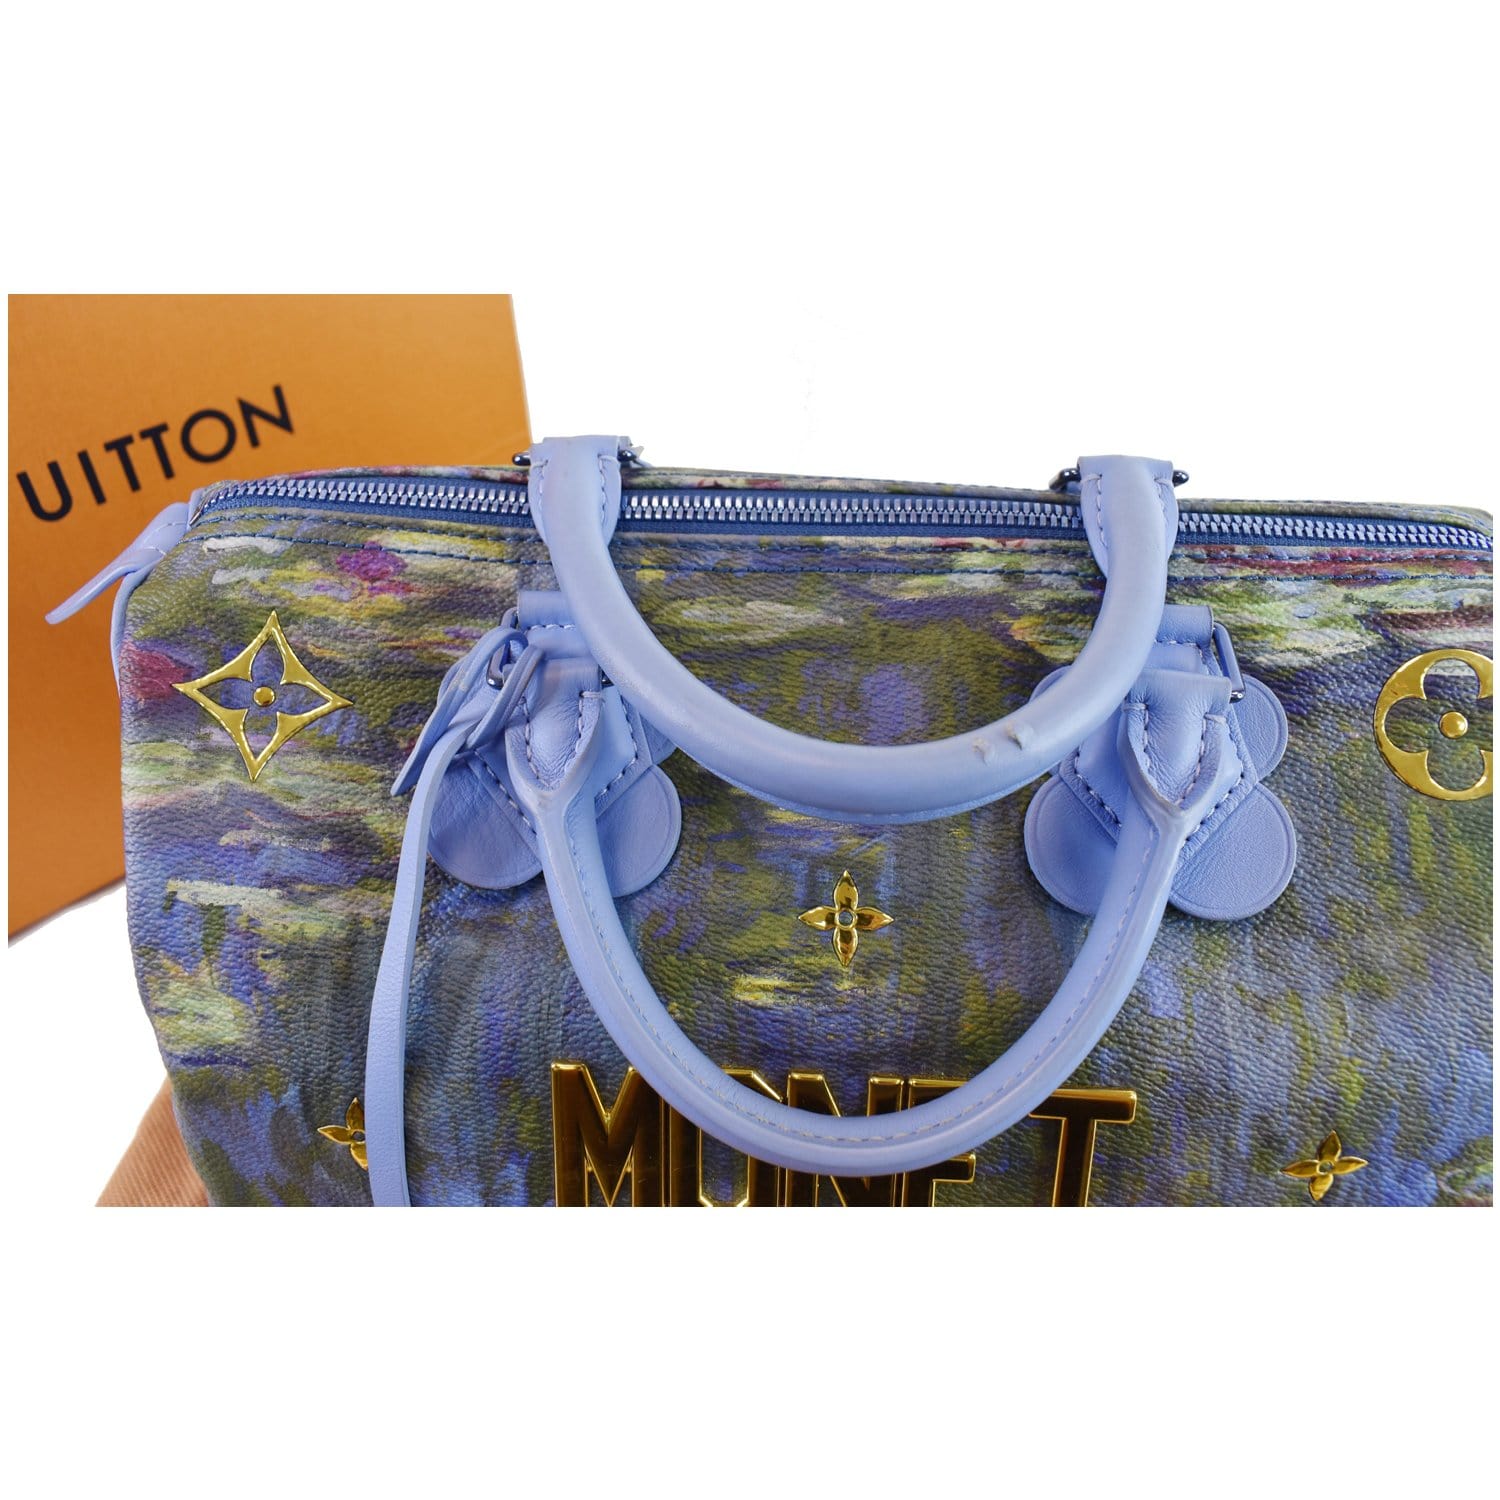 ❌SOLD❌Louis Vuitton Masters MONET Speedy koons bag  Louis vuitton, Louis  vuitton satchel, Vintage louis vuitton